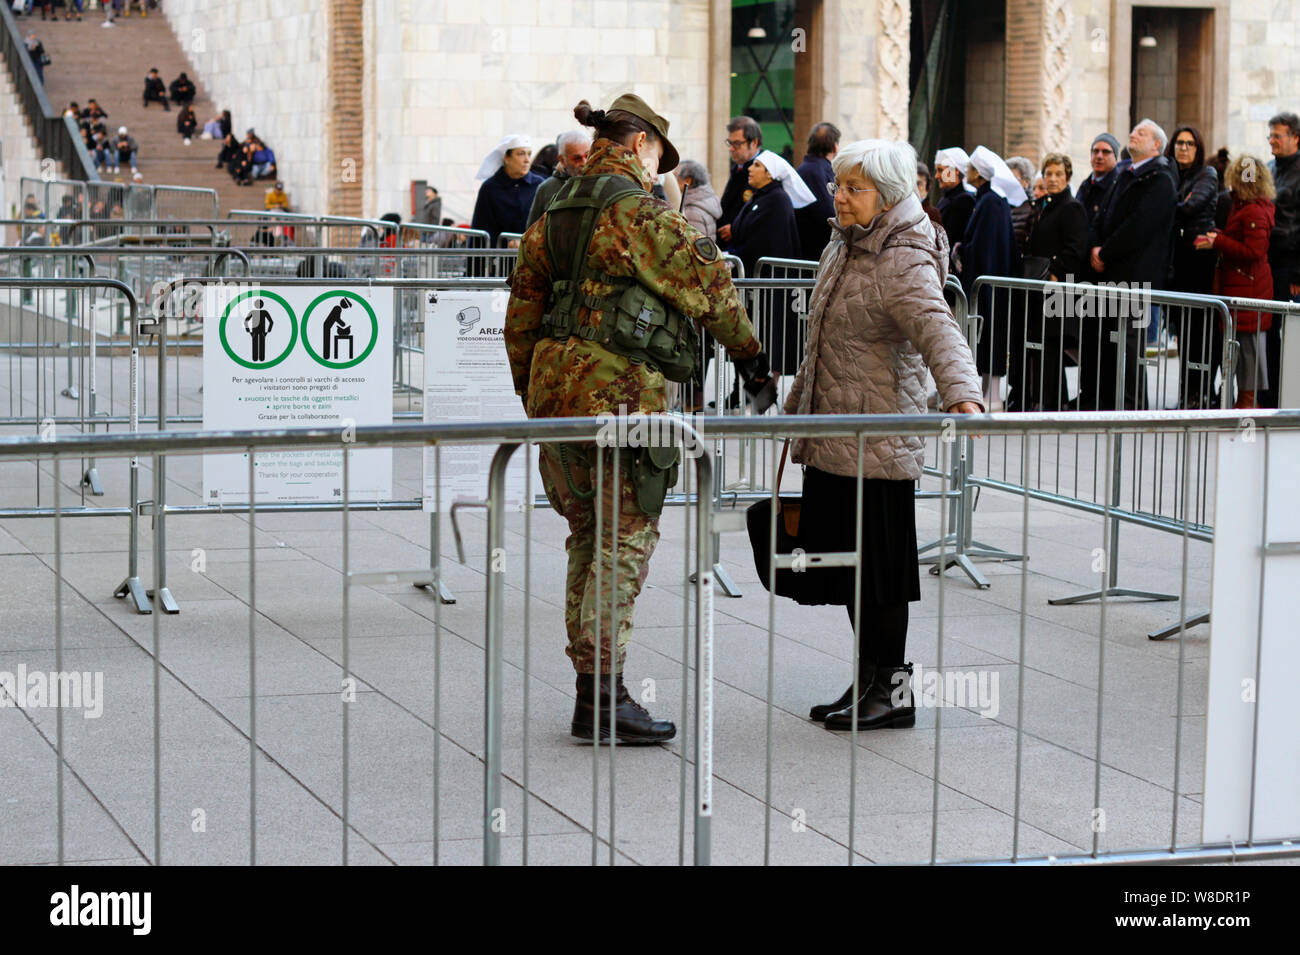 Milan, Italie - 14 décembre 2018 : A senior woman est fouillée par un soldat vêtu d'un uniforme de camouflage avant d'entrer dans la cathédrale de Milan. Banque D'Images